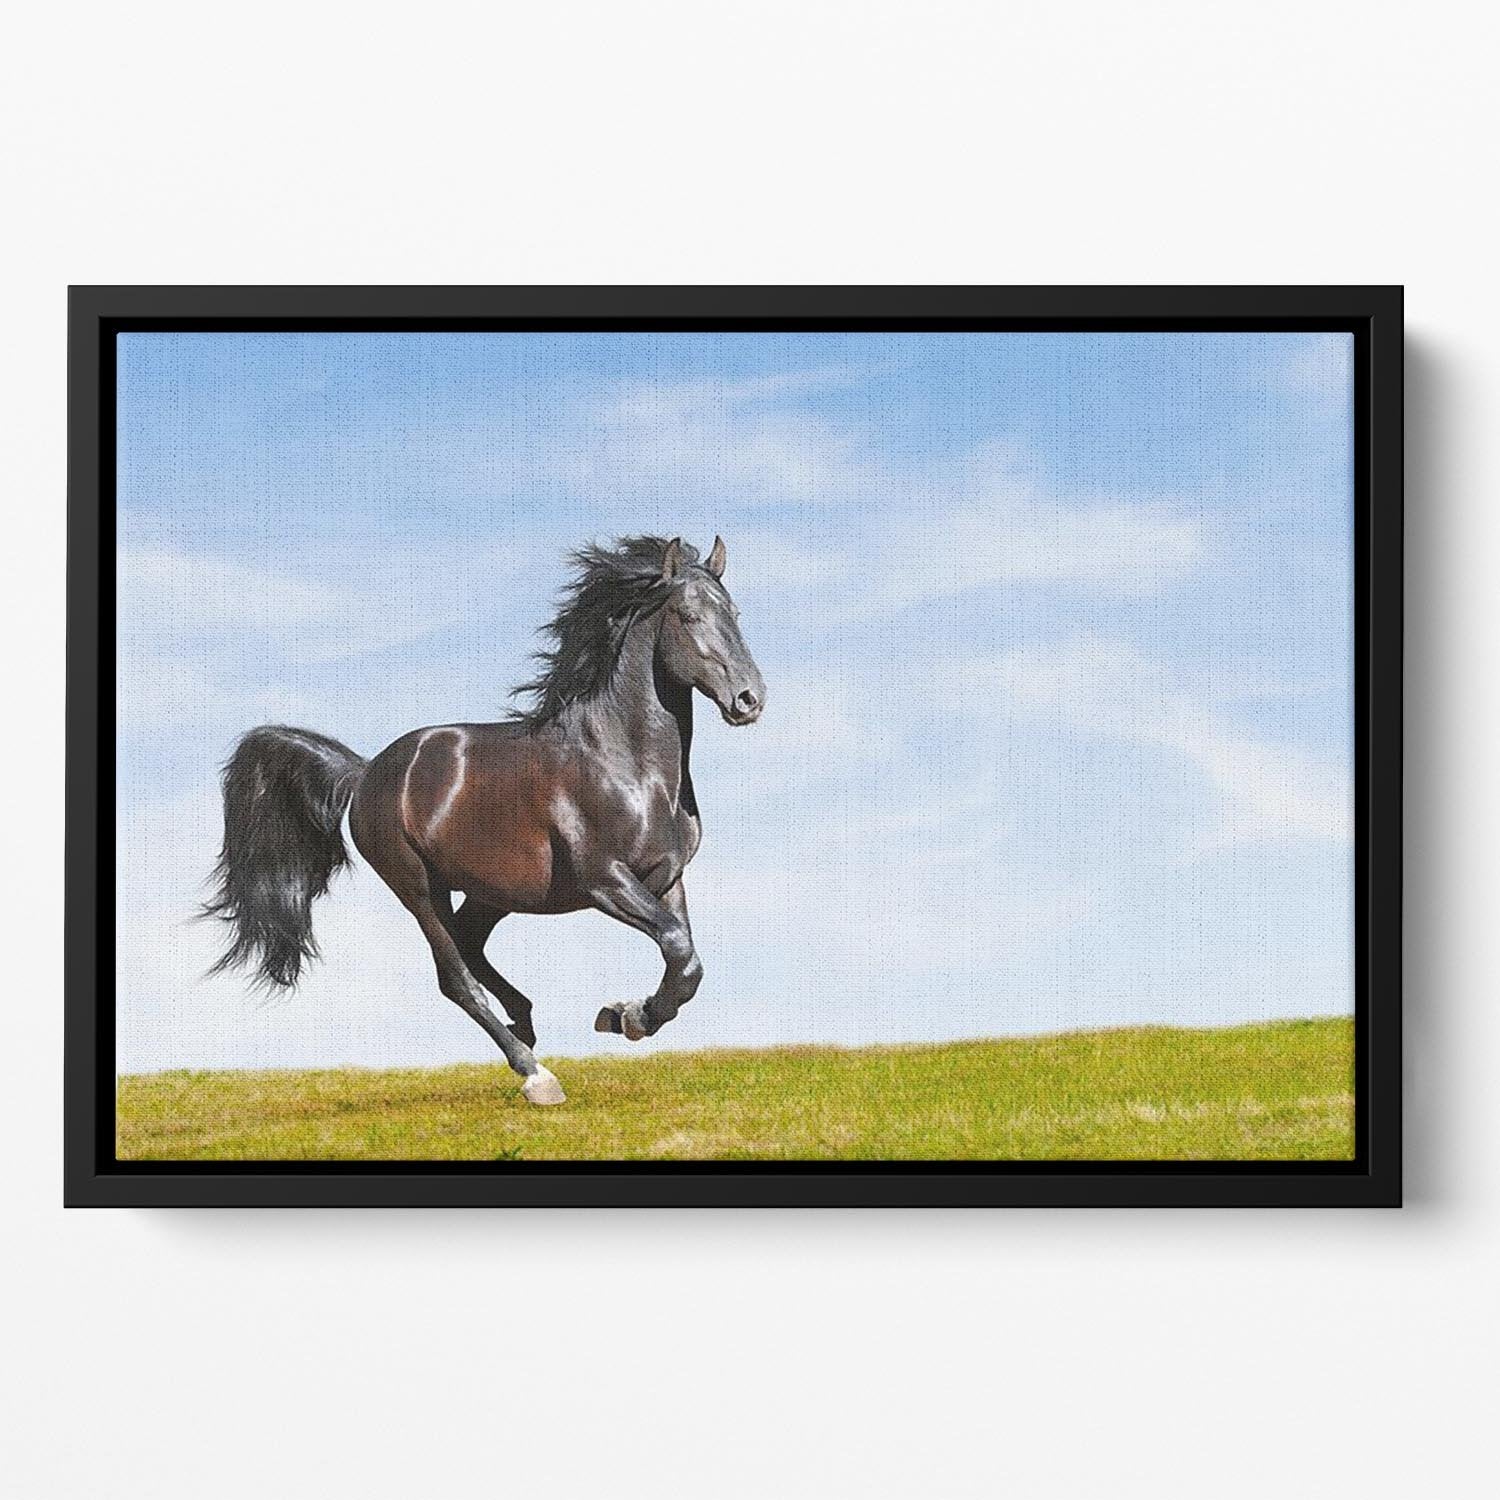 Black Kladruby horse rung gallop Floating Framed Canvas - Canvas Art Rocks - 2